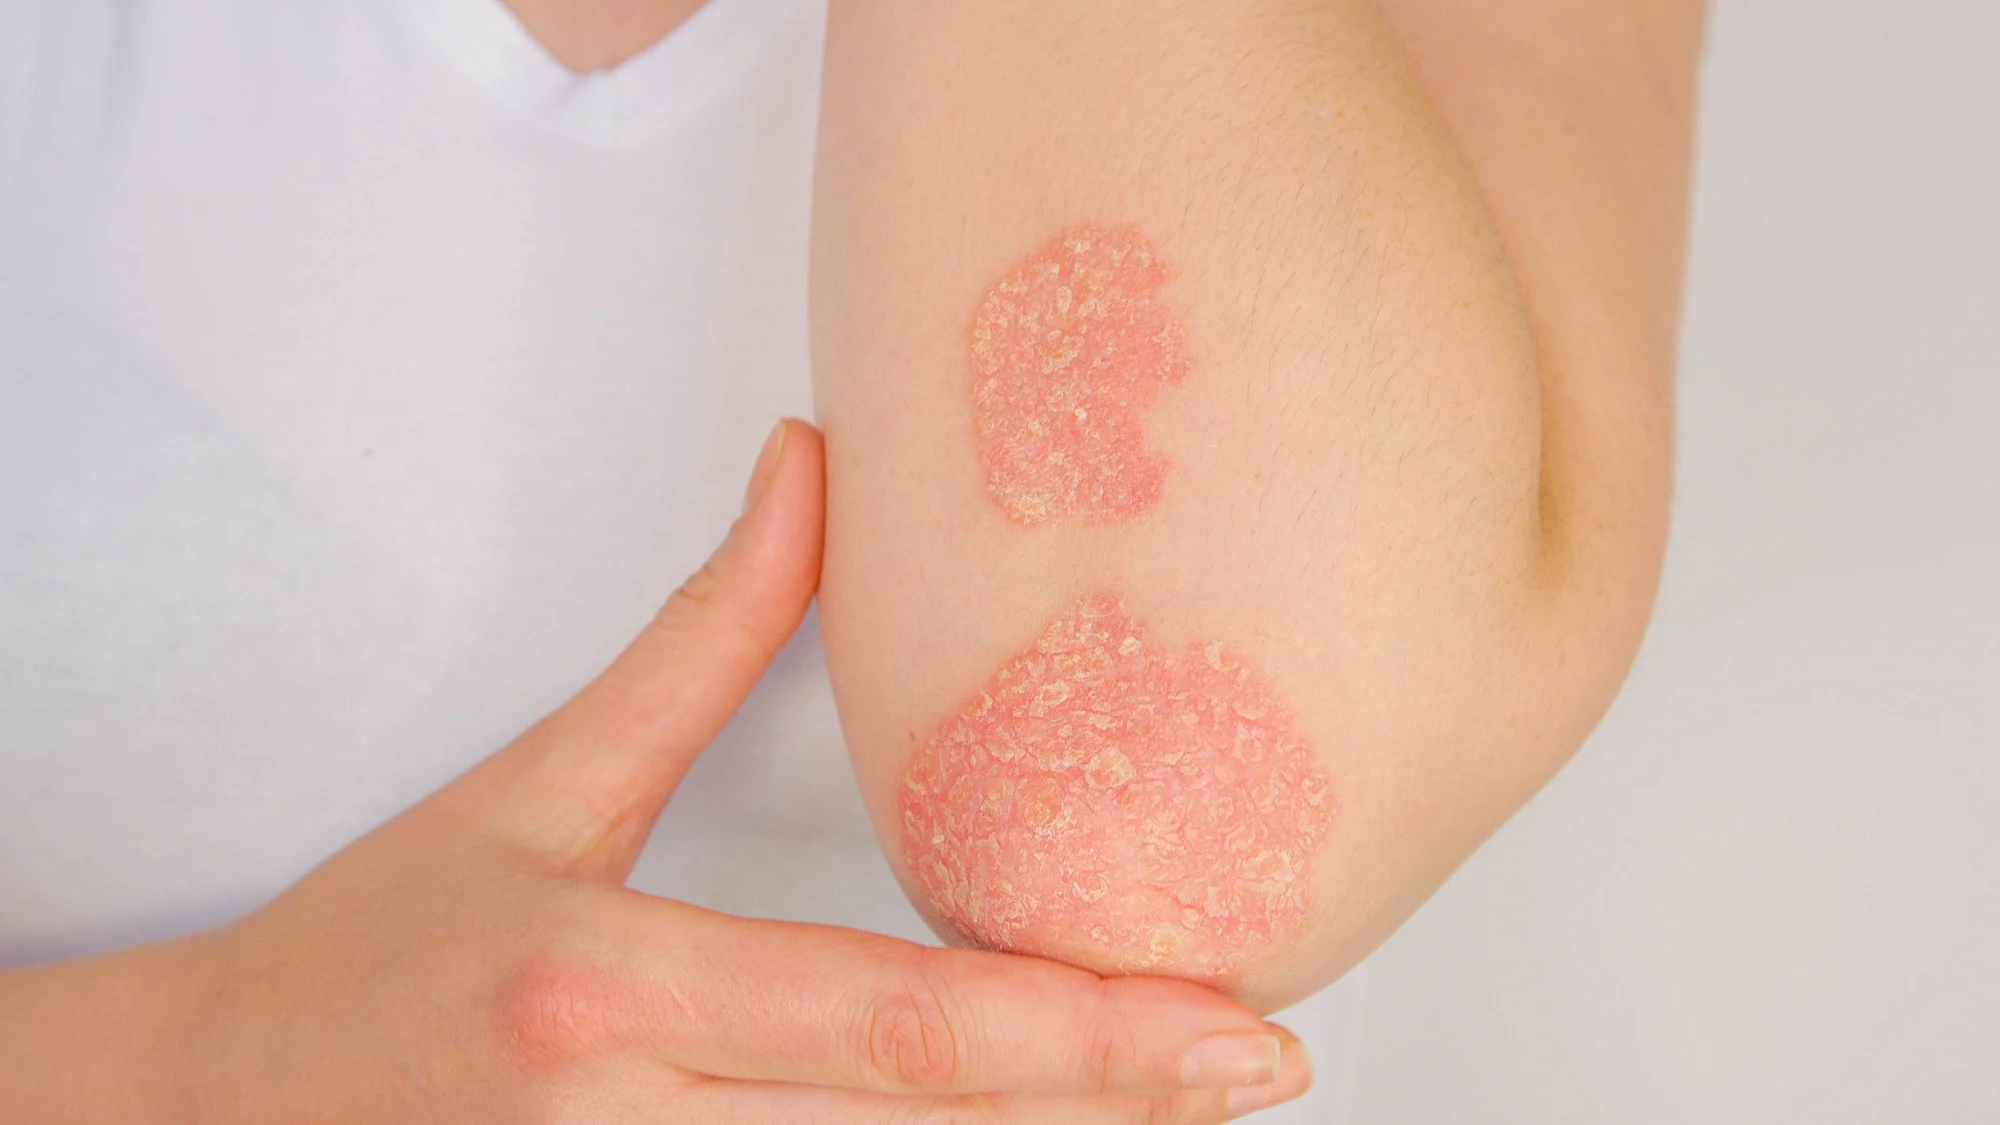 Bệnh vẩy nến gây phát ban khô, ngứa đặc trưng bởi các mảng da có vảy. 